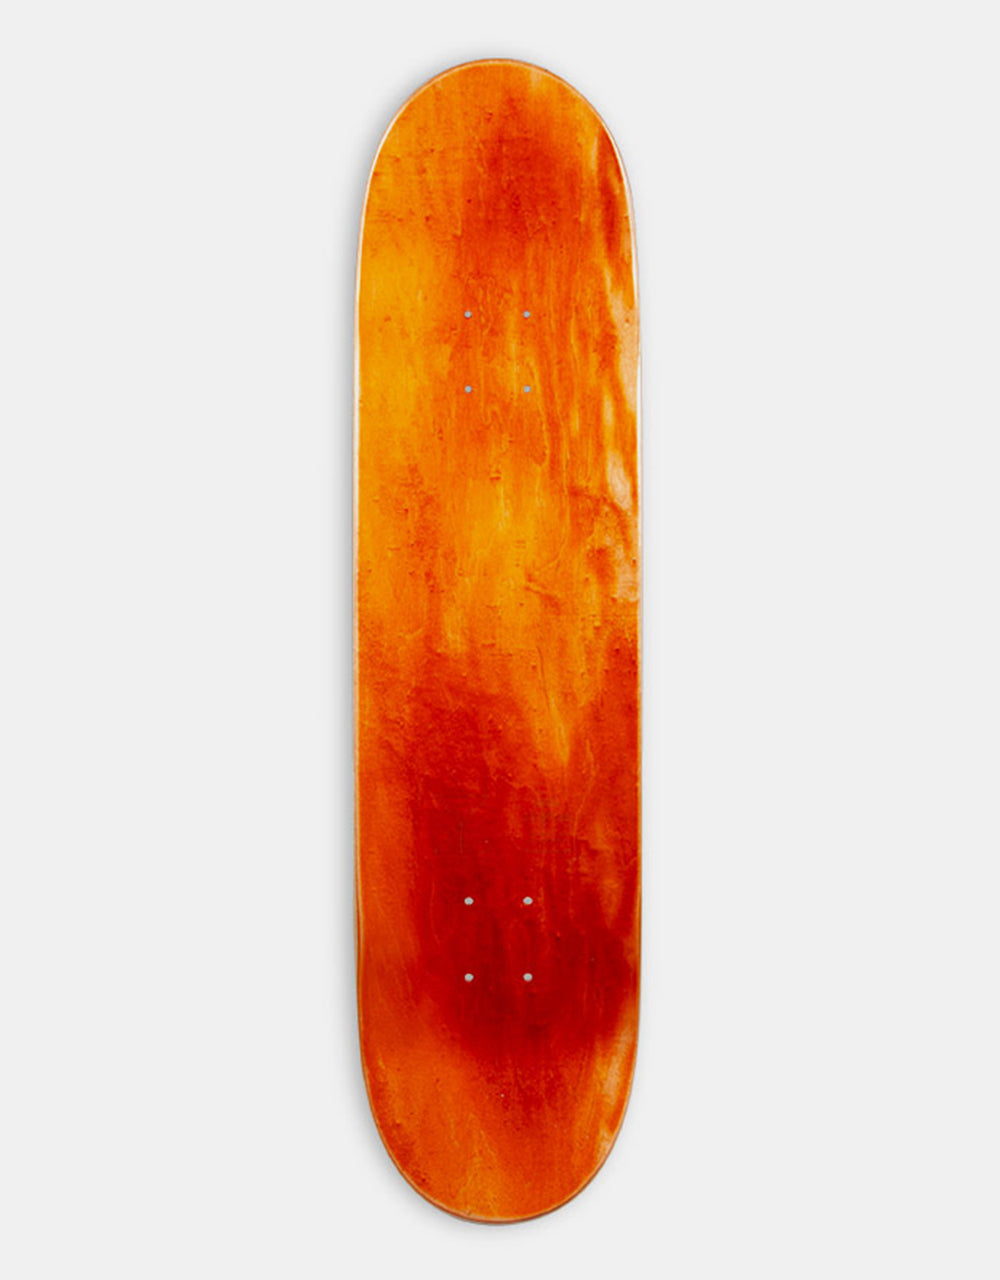 Sour Gustav Bat Skateboard Deck - 8"